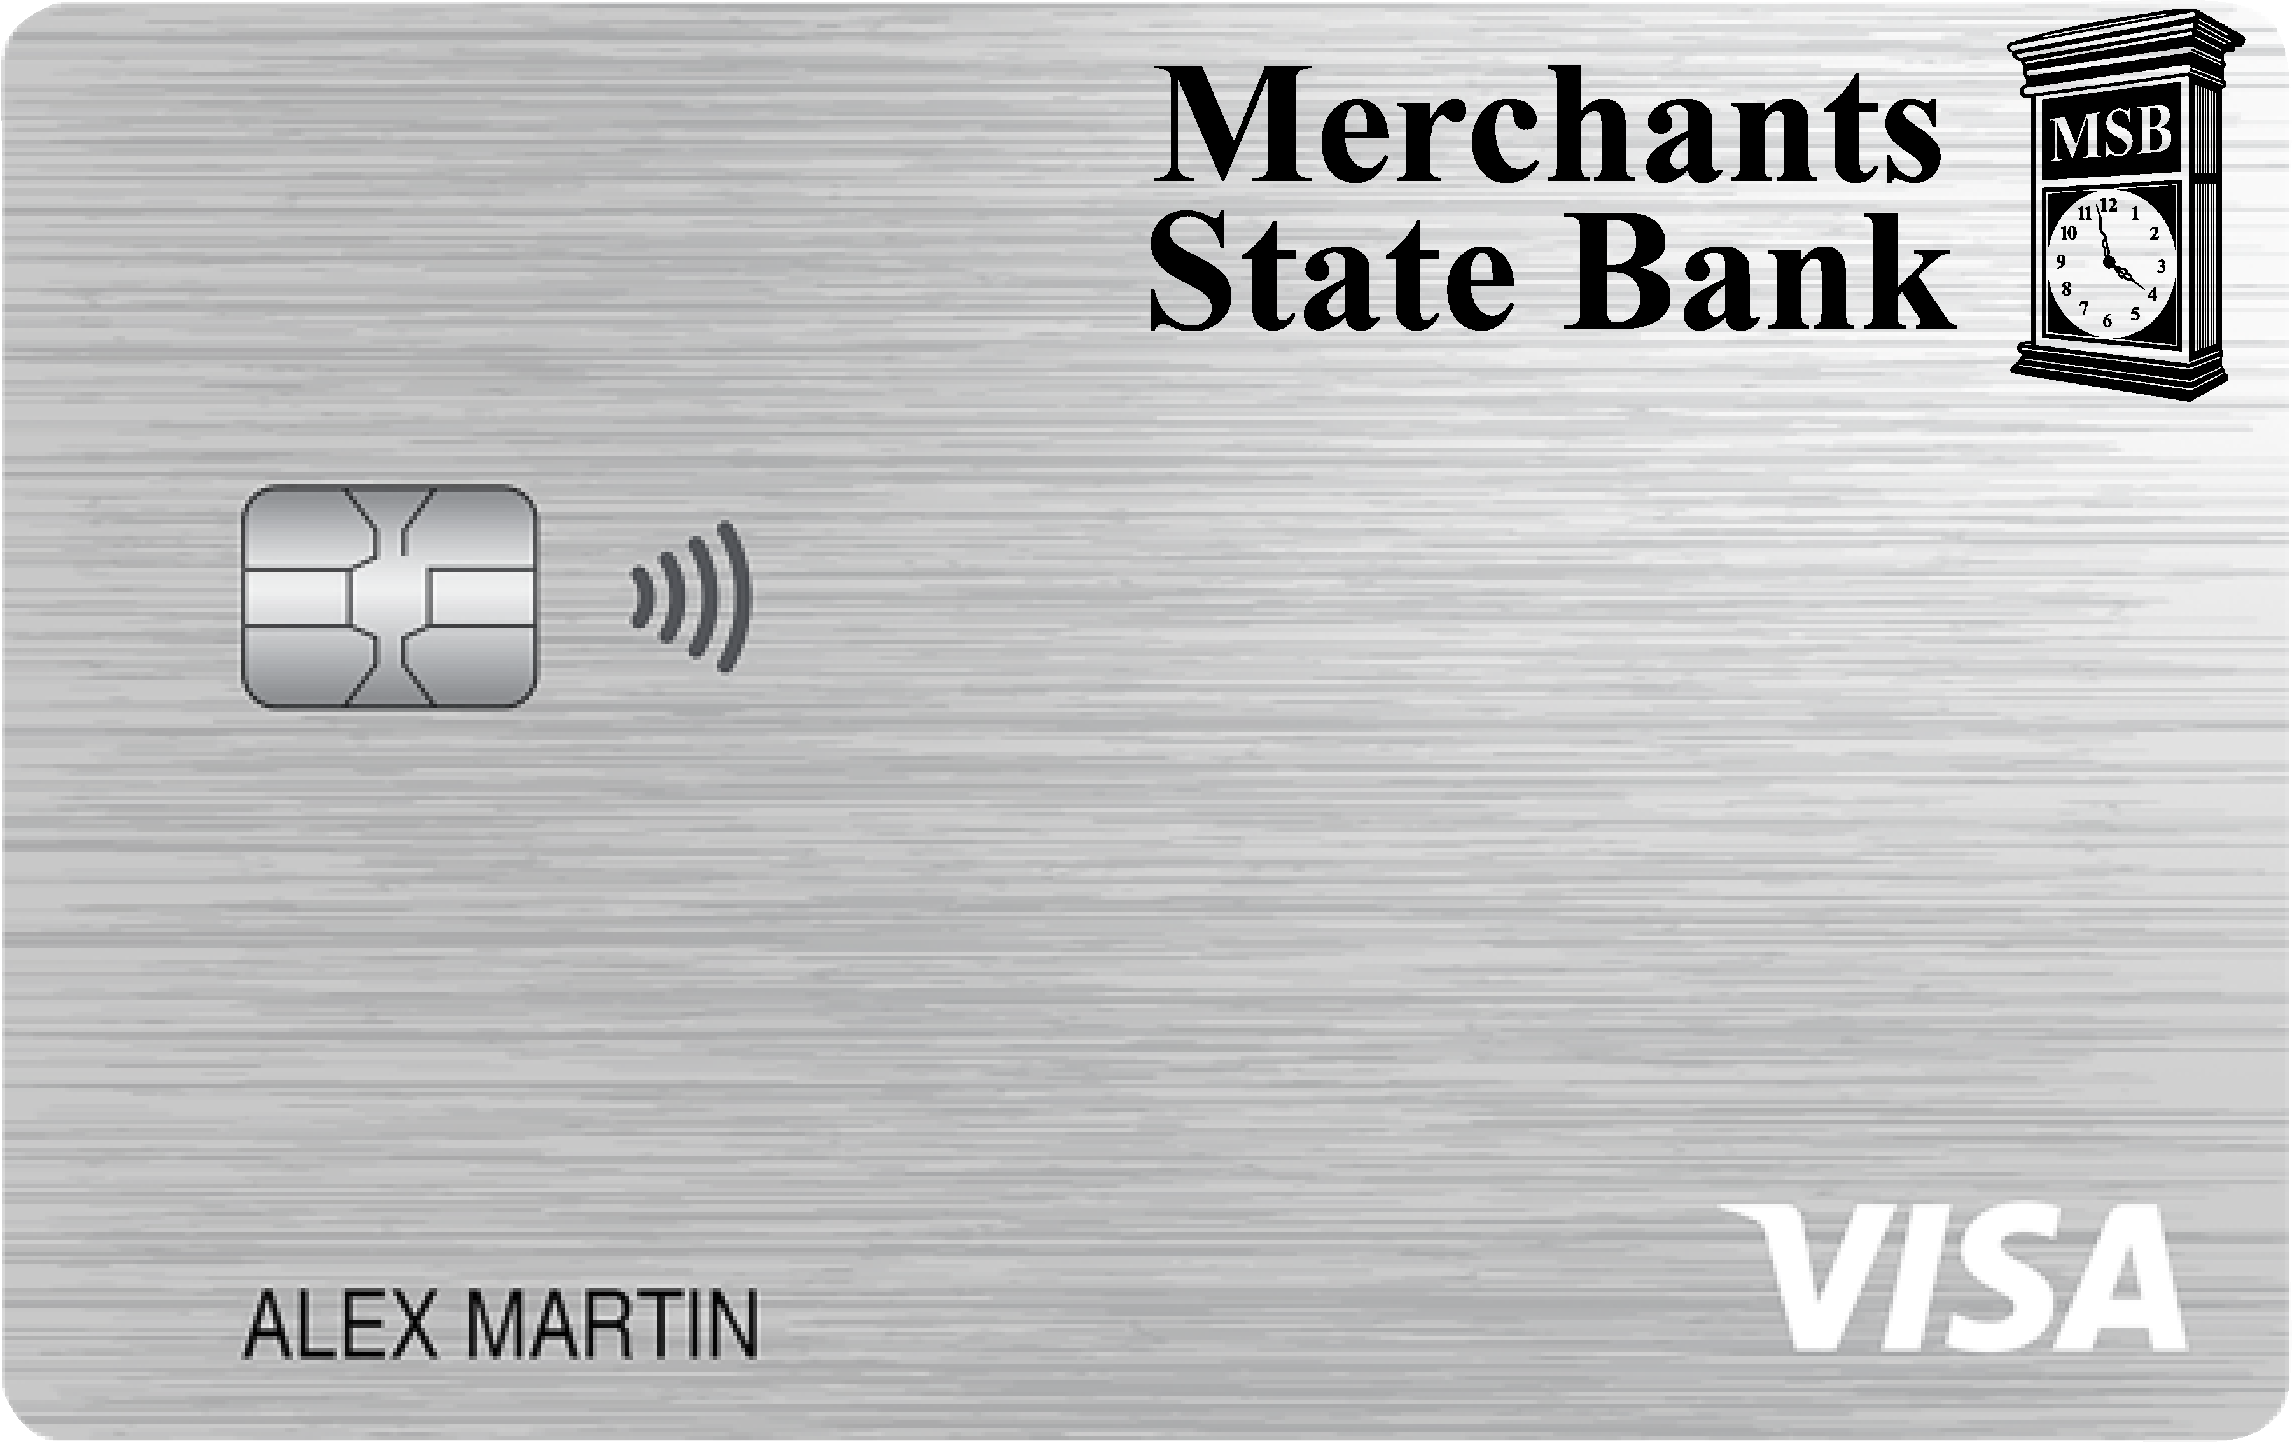 Merchants State Bank